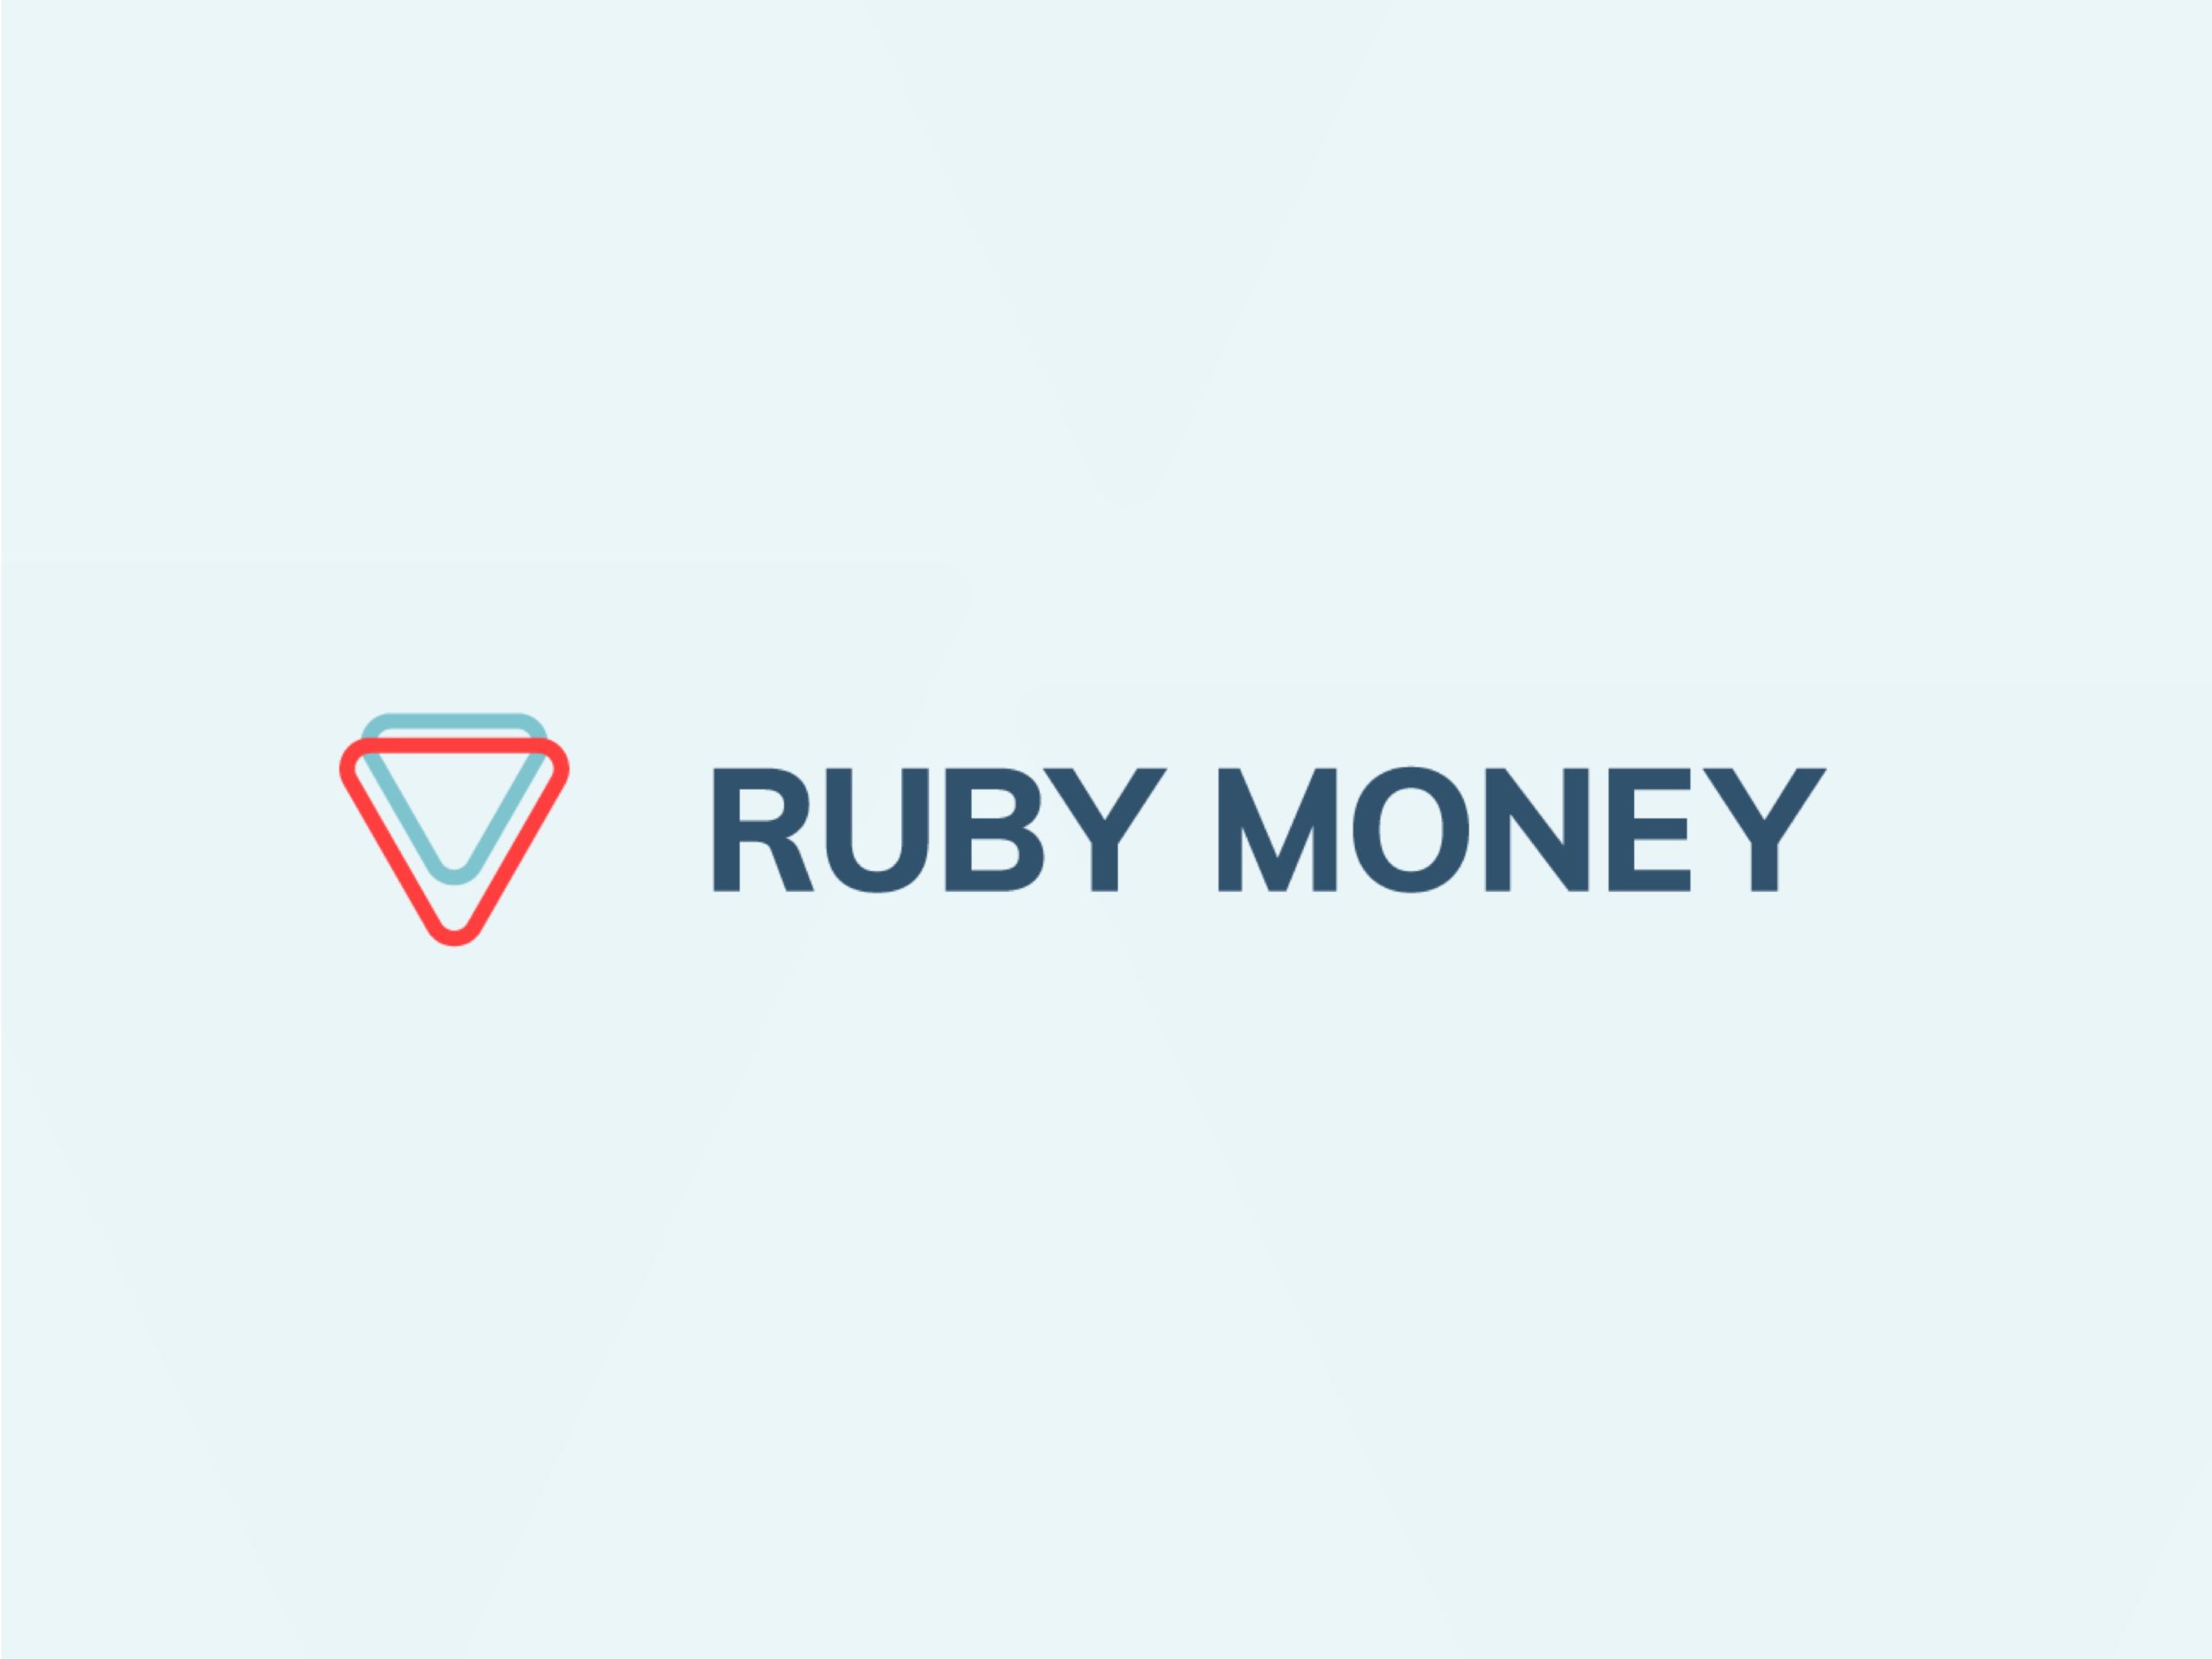 RubyMoney Image 